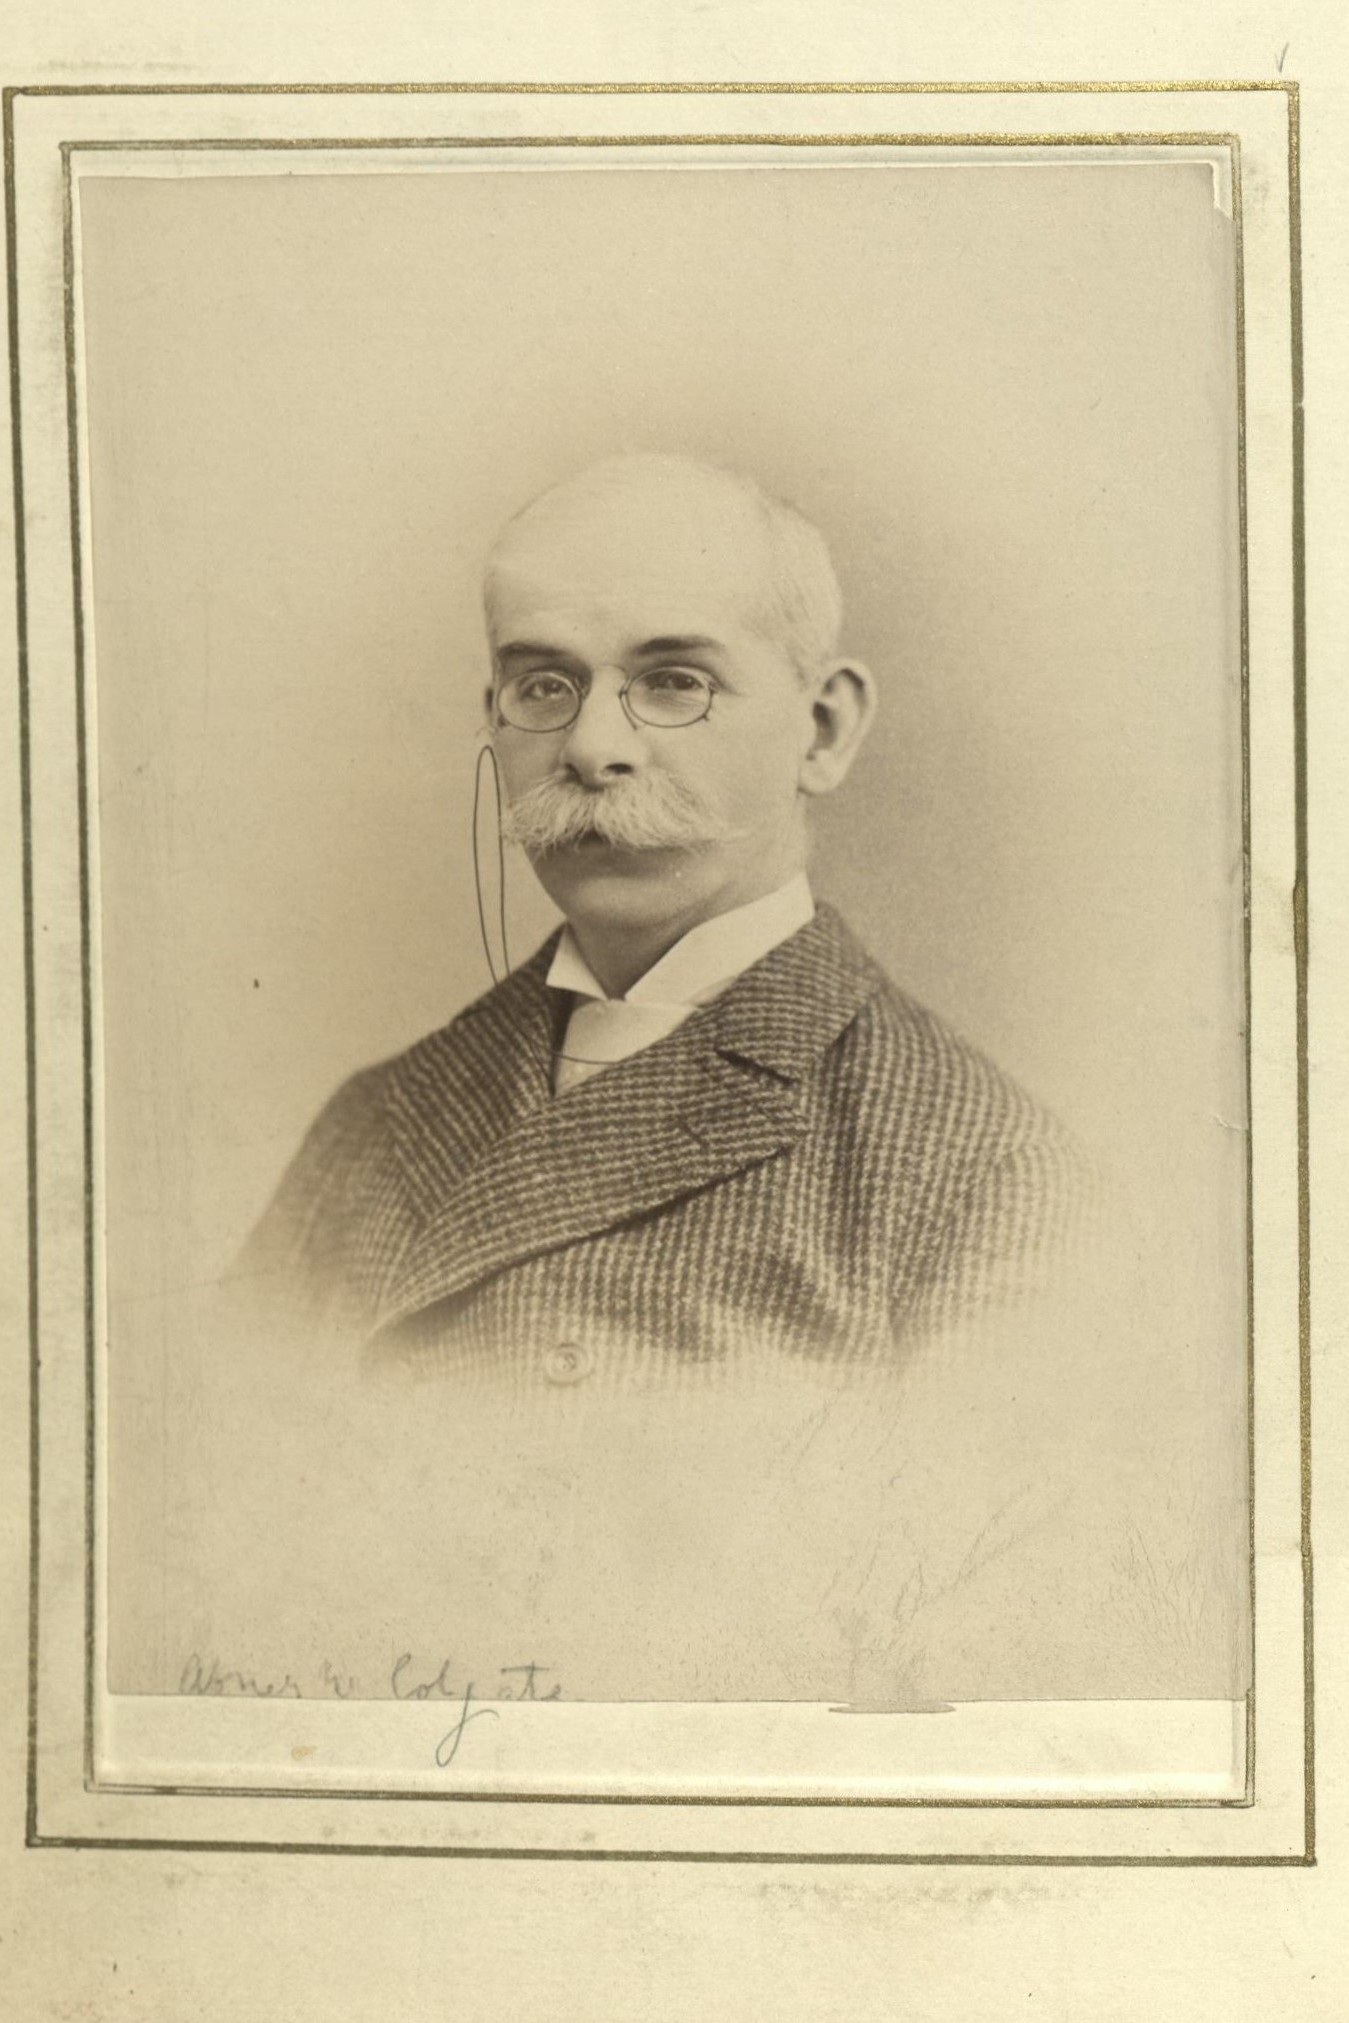 Member portrait of Abner W. Colgate